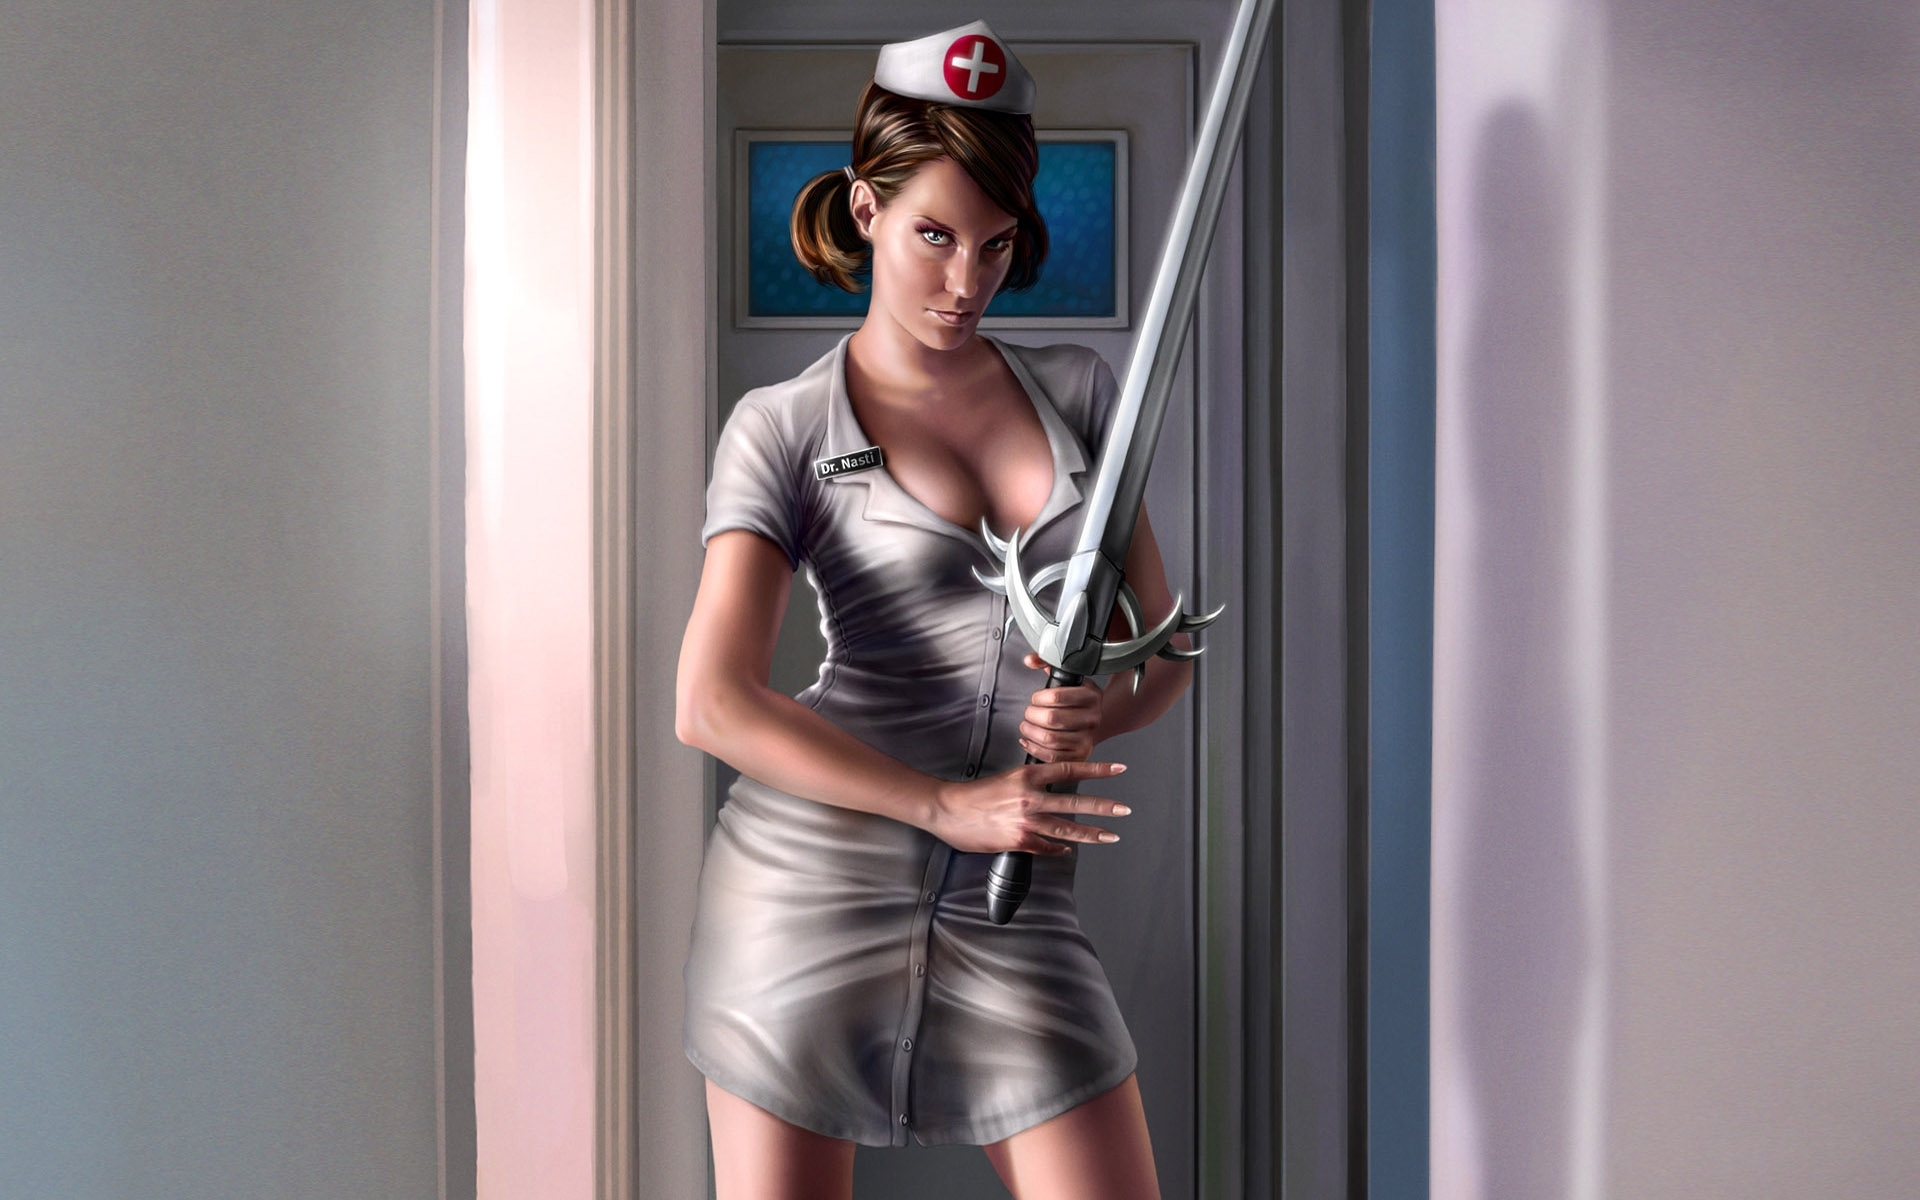 Картинки Девушка, медсестра, меч, оружие, костюм, белый халат фото и обои на рабочий стол